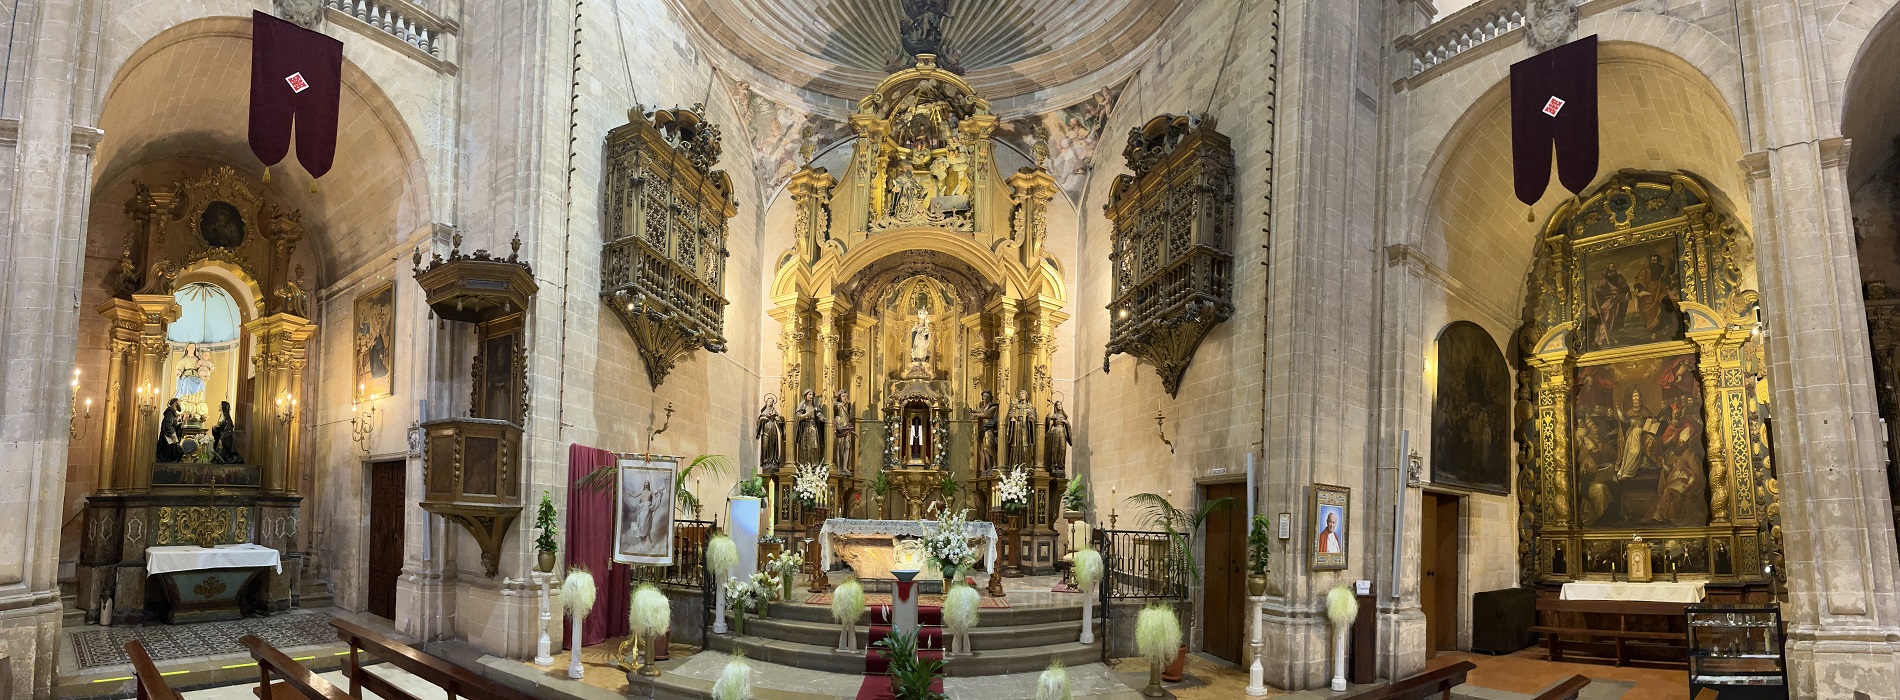 125 años del colegio san Agustín de Palma